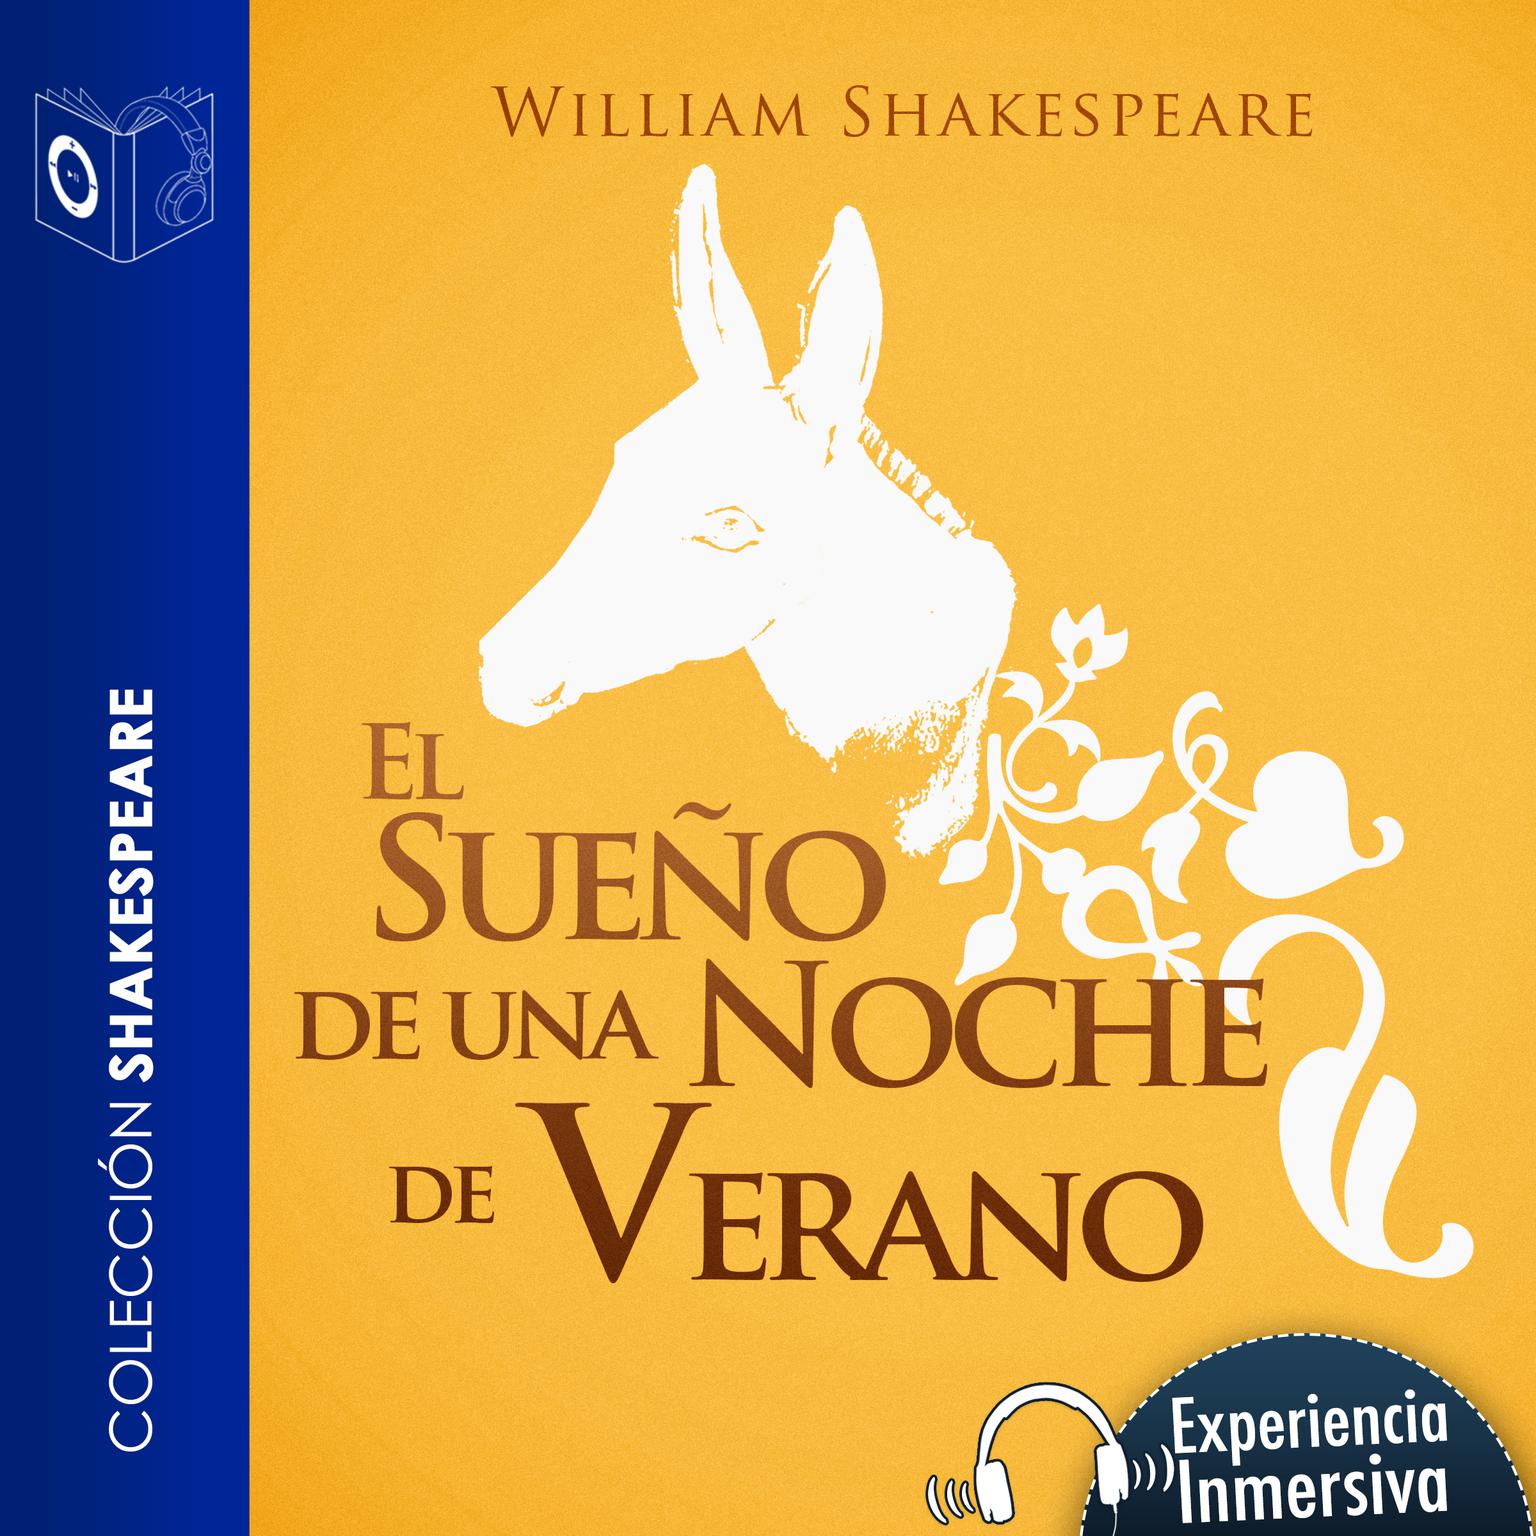 El sueño de una noche de verano (Abridged) Audiobook, by William Shakespeare